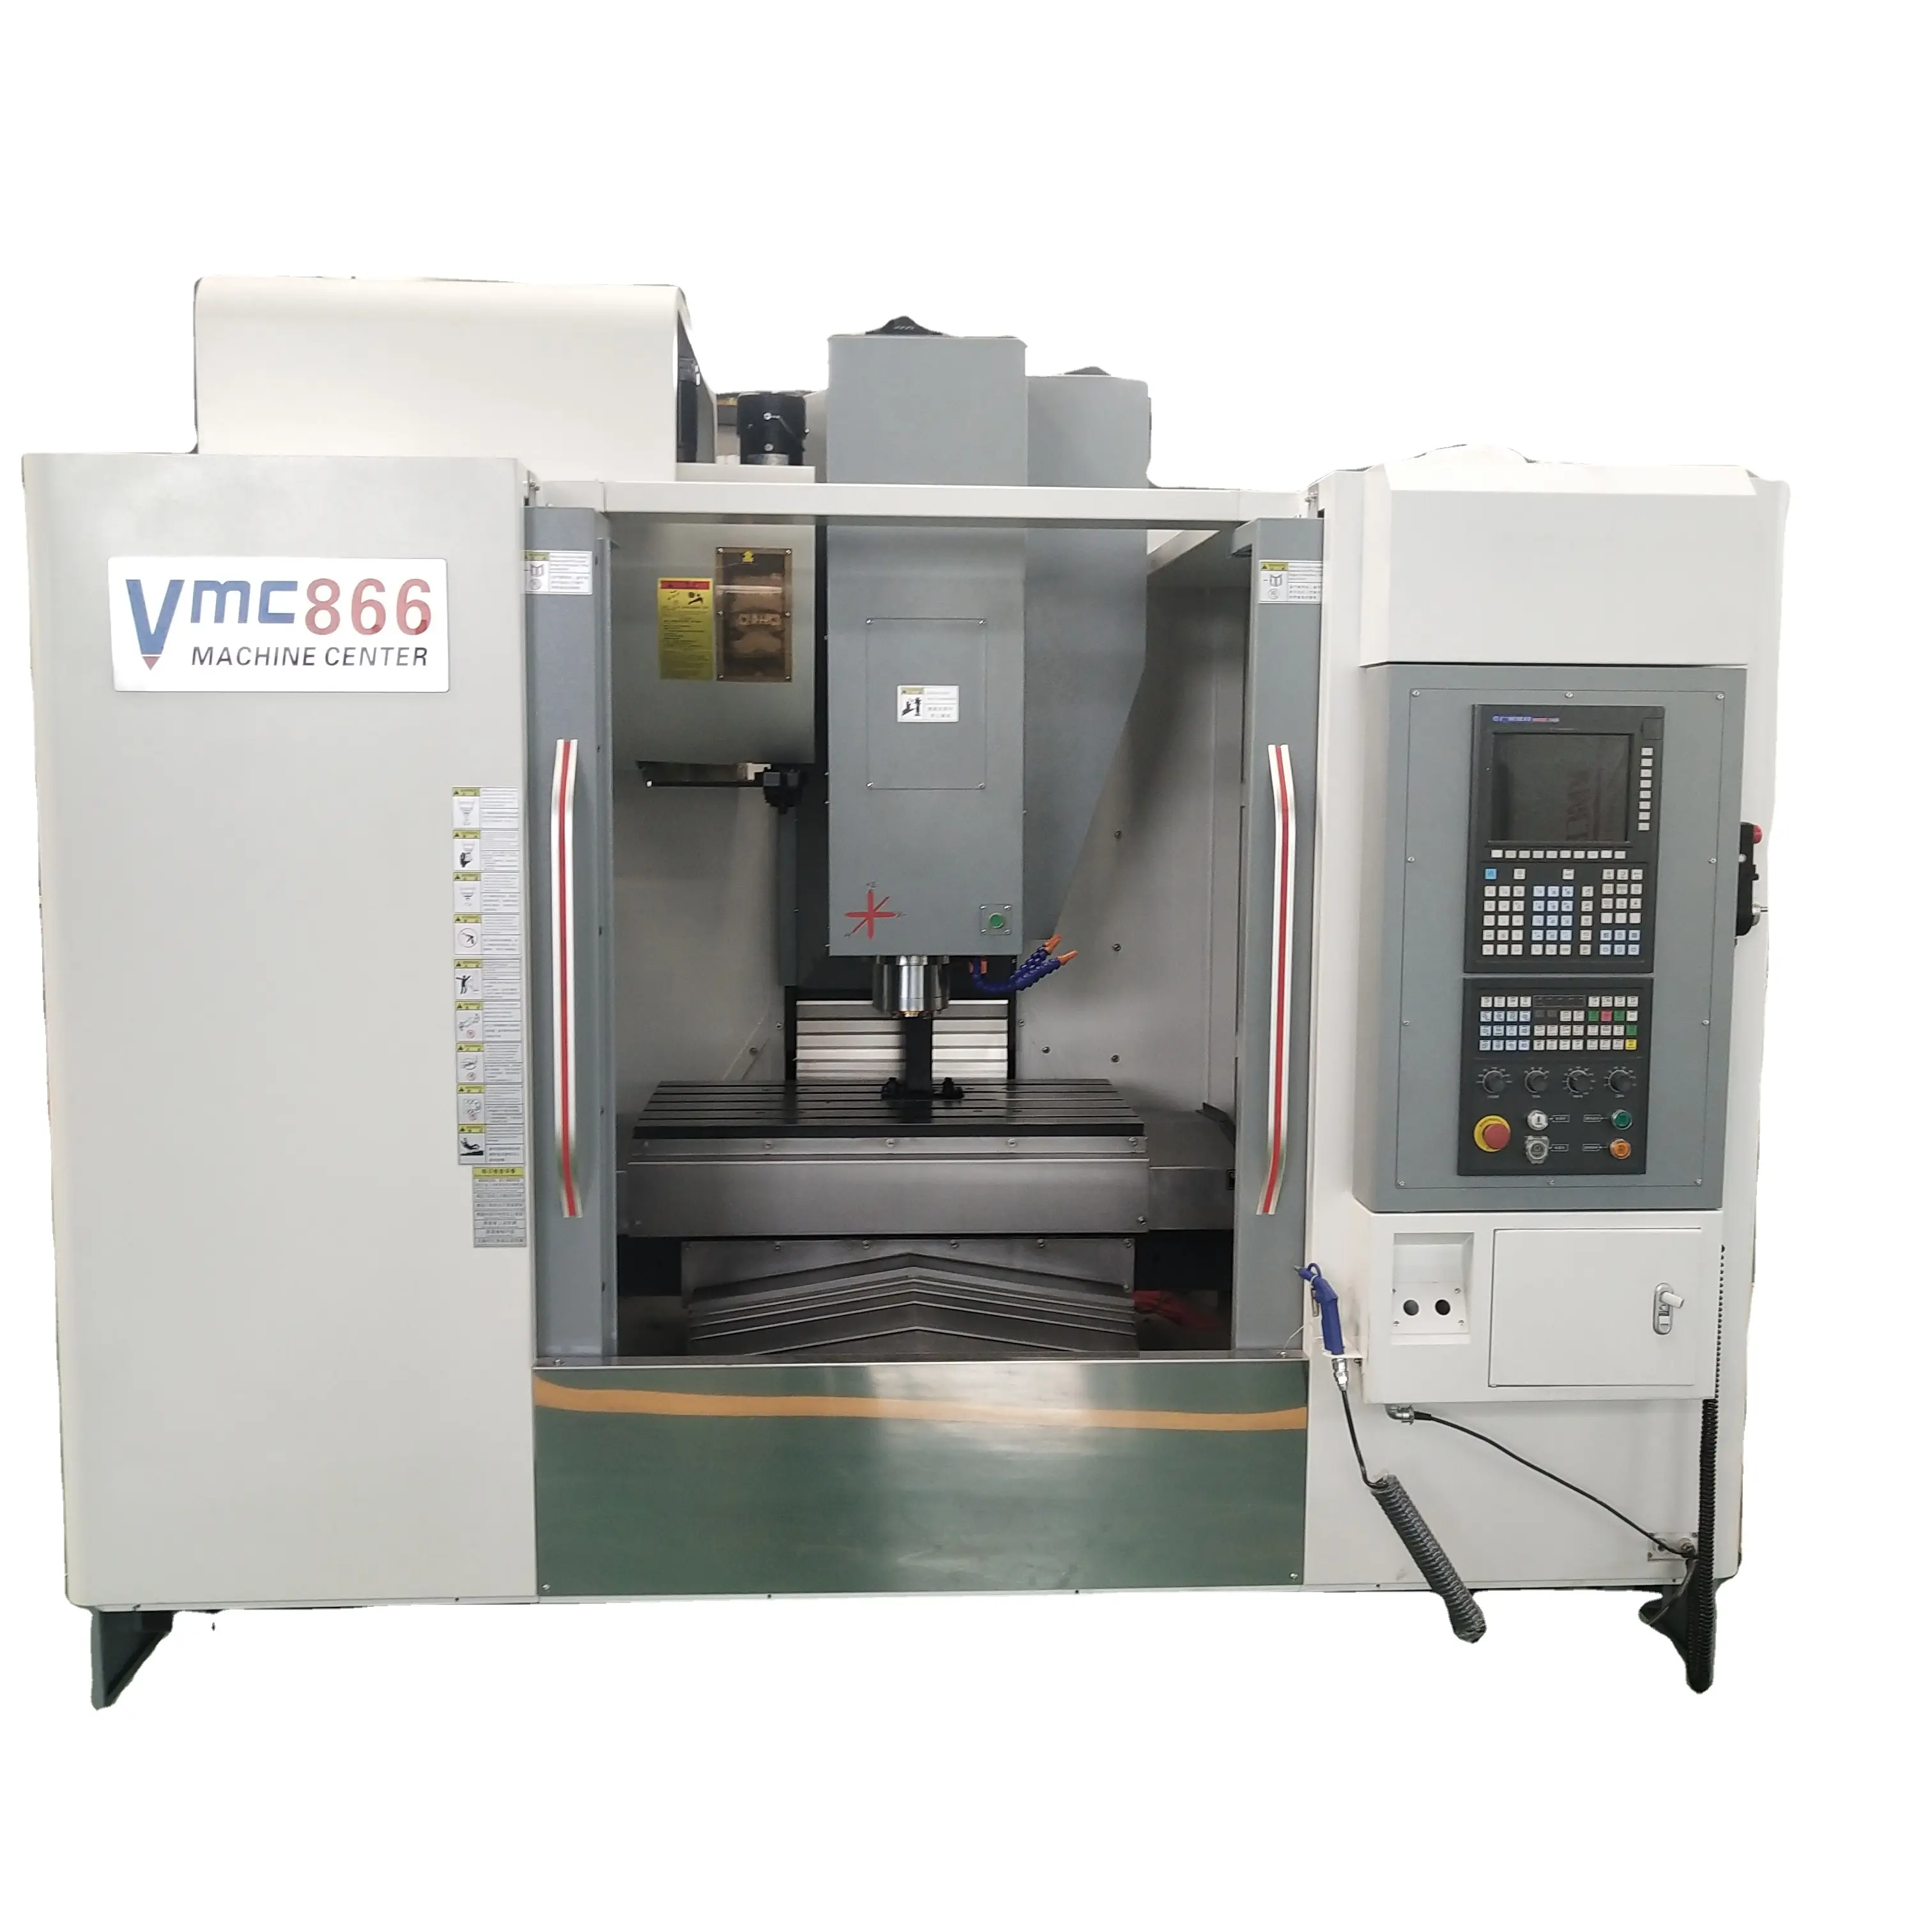 Centre d'usinage vertical CNC VMC866 gsk, contrôleur cnc pour le traitement des métaux, cnc, ningbo